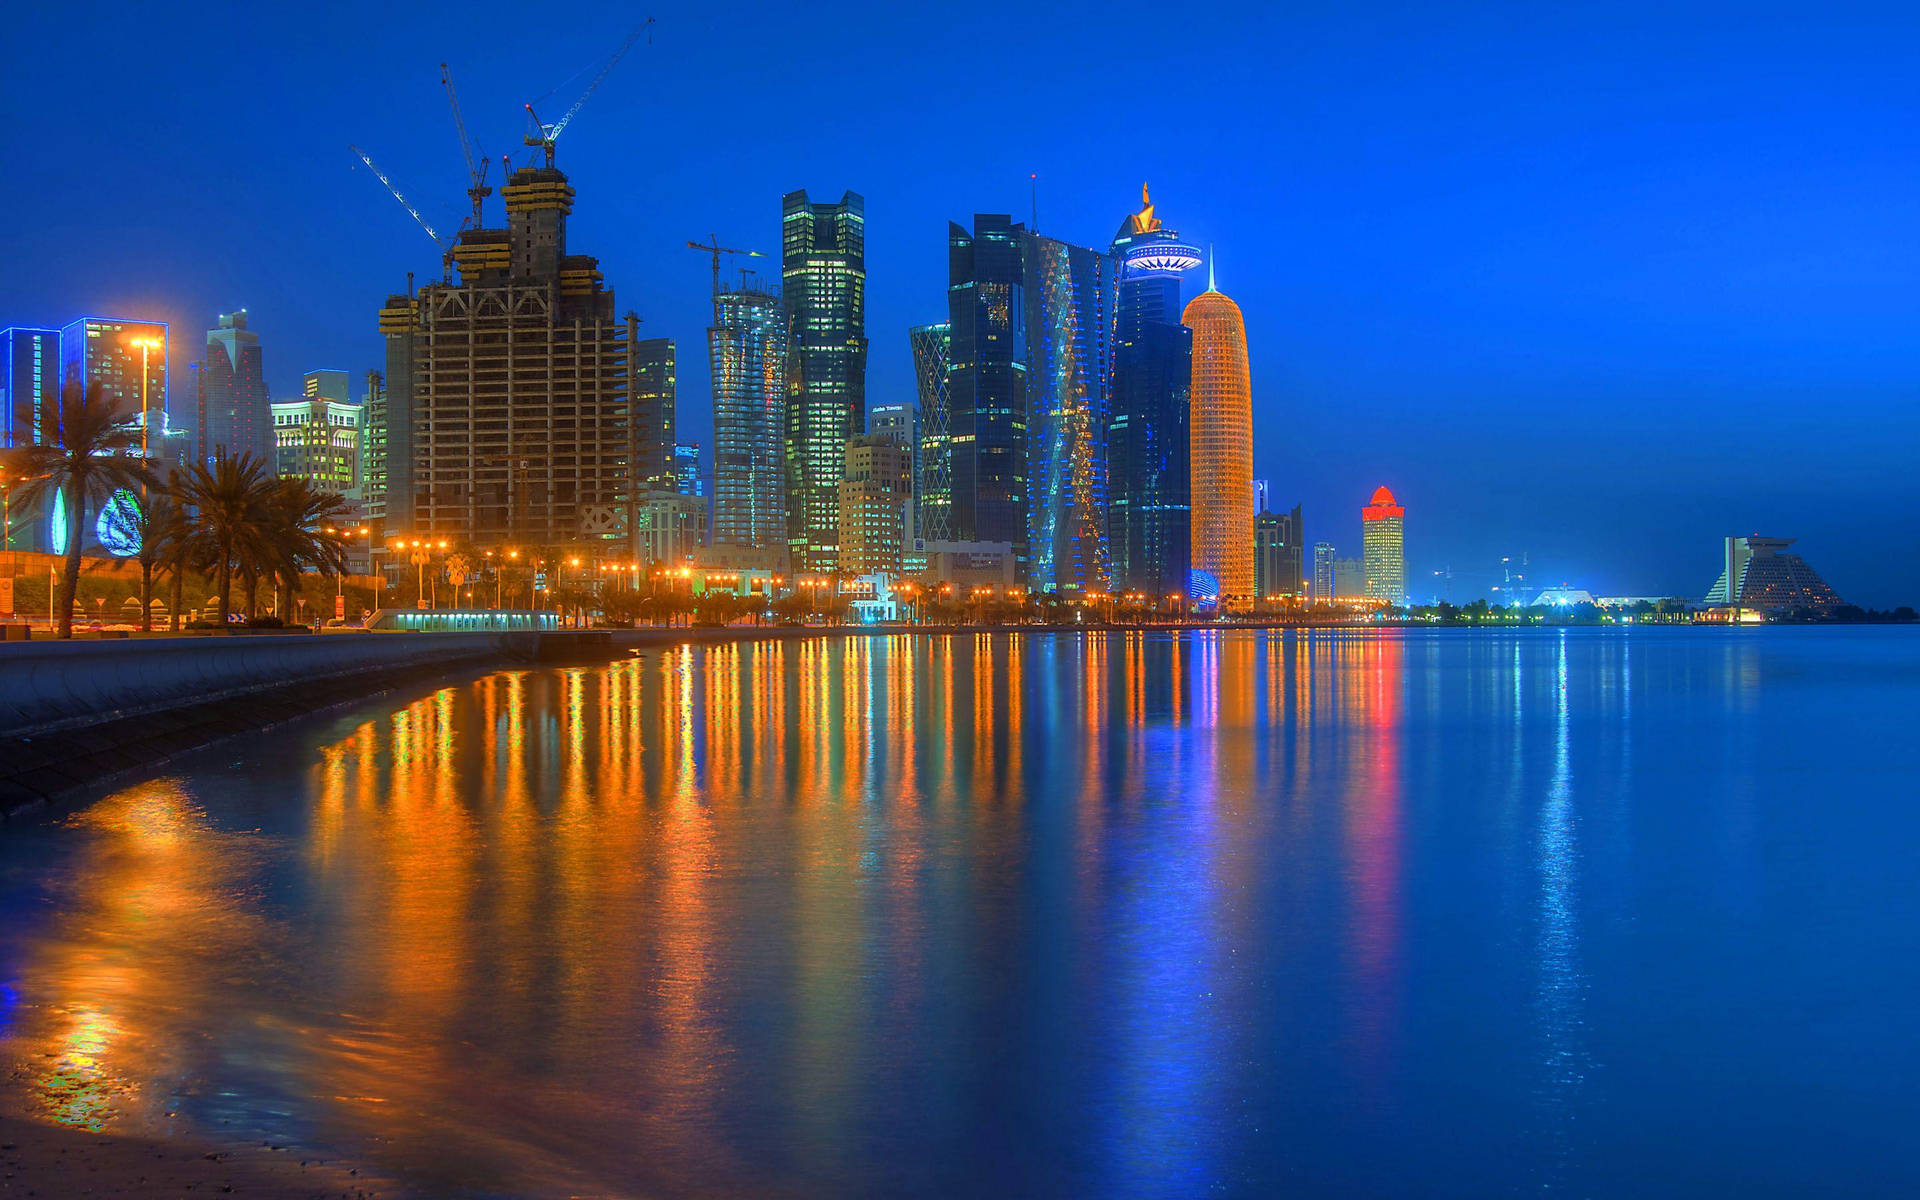 Qatar's Doha Corniche